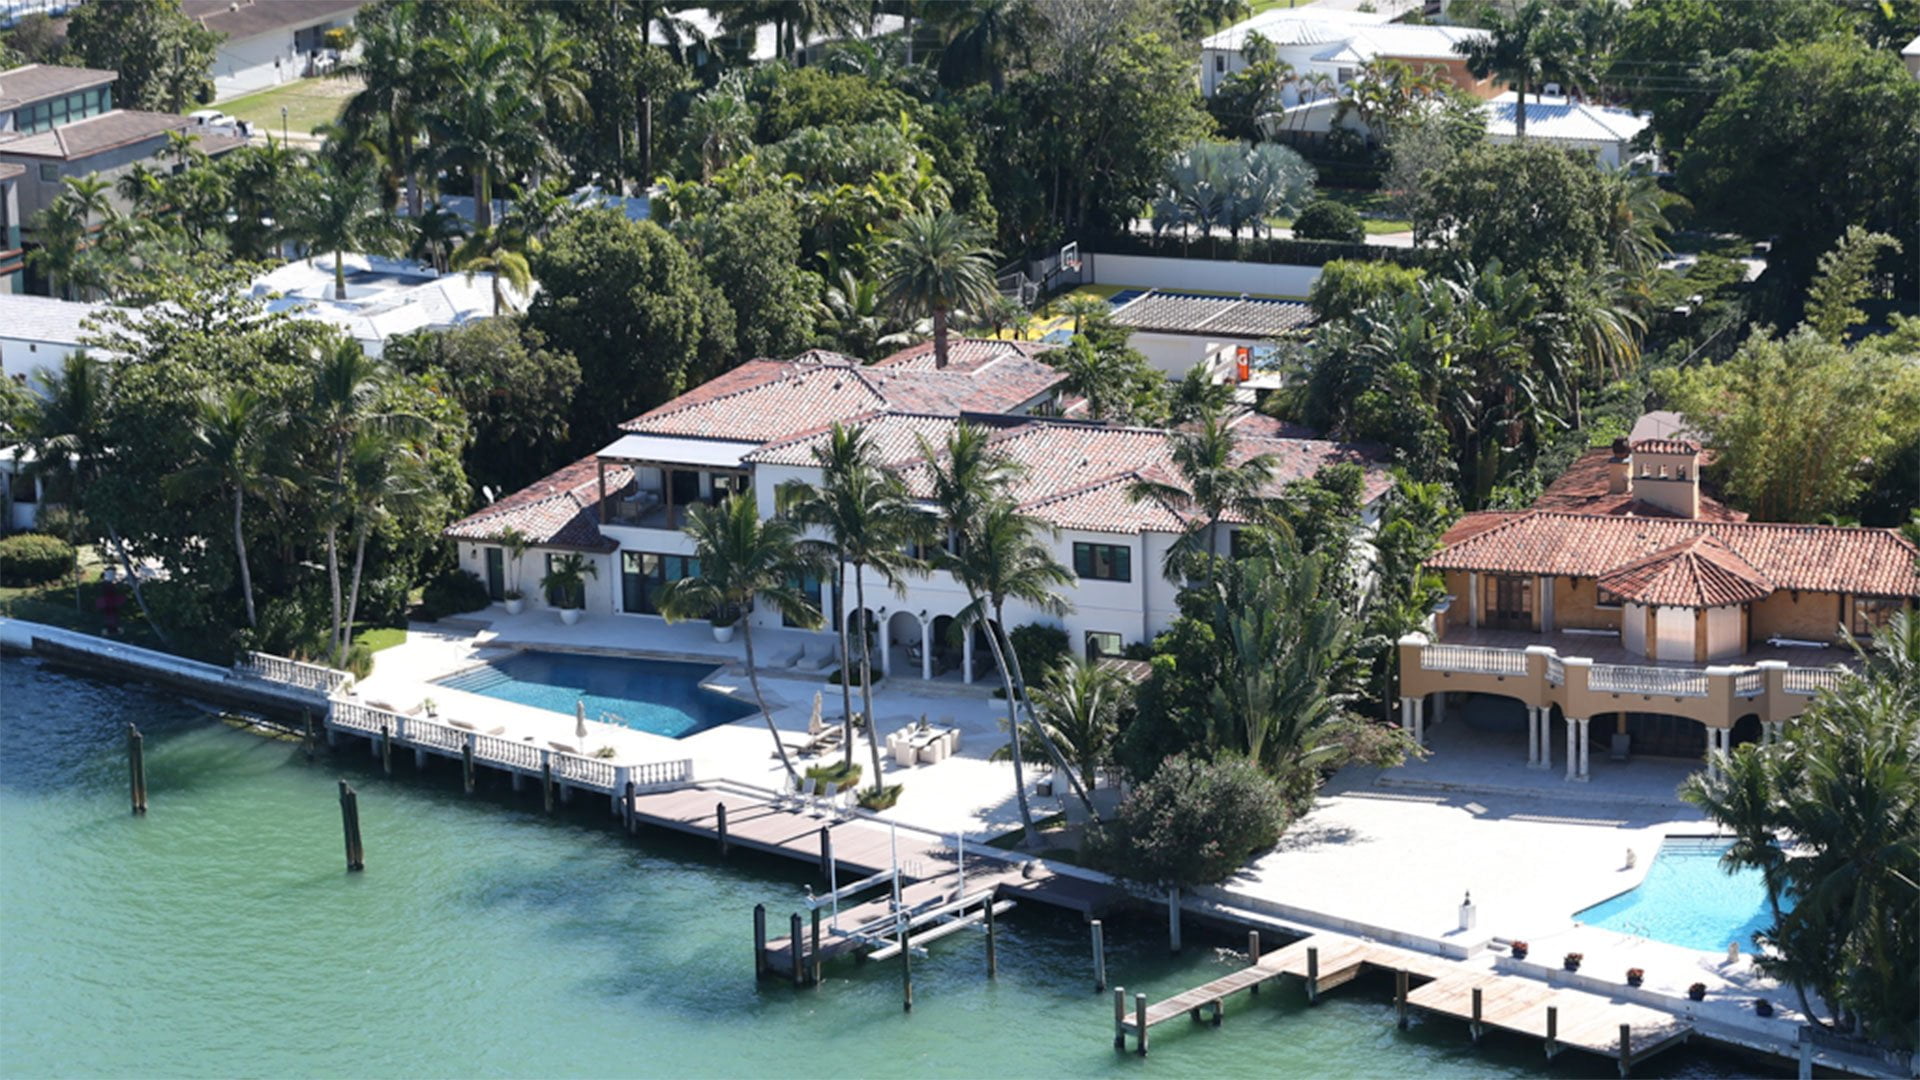 Casa de Shakira en Miami